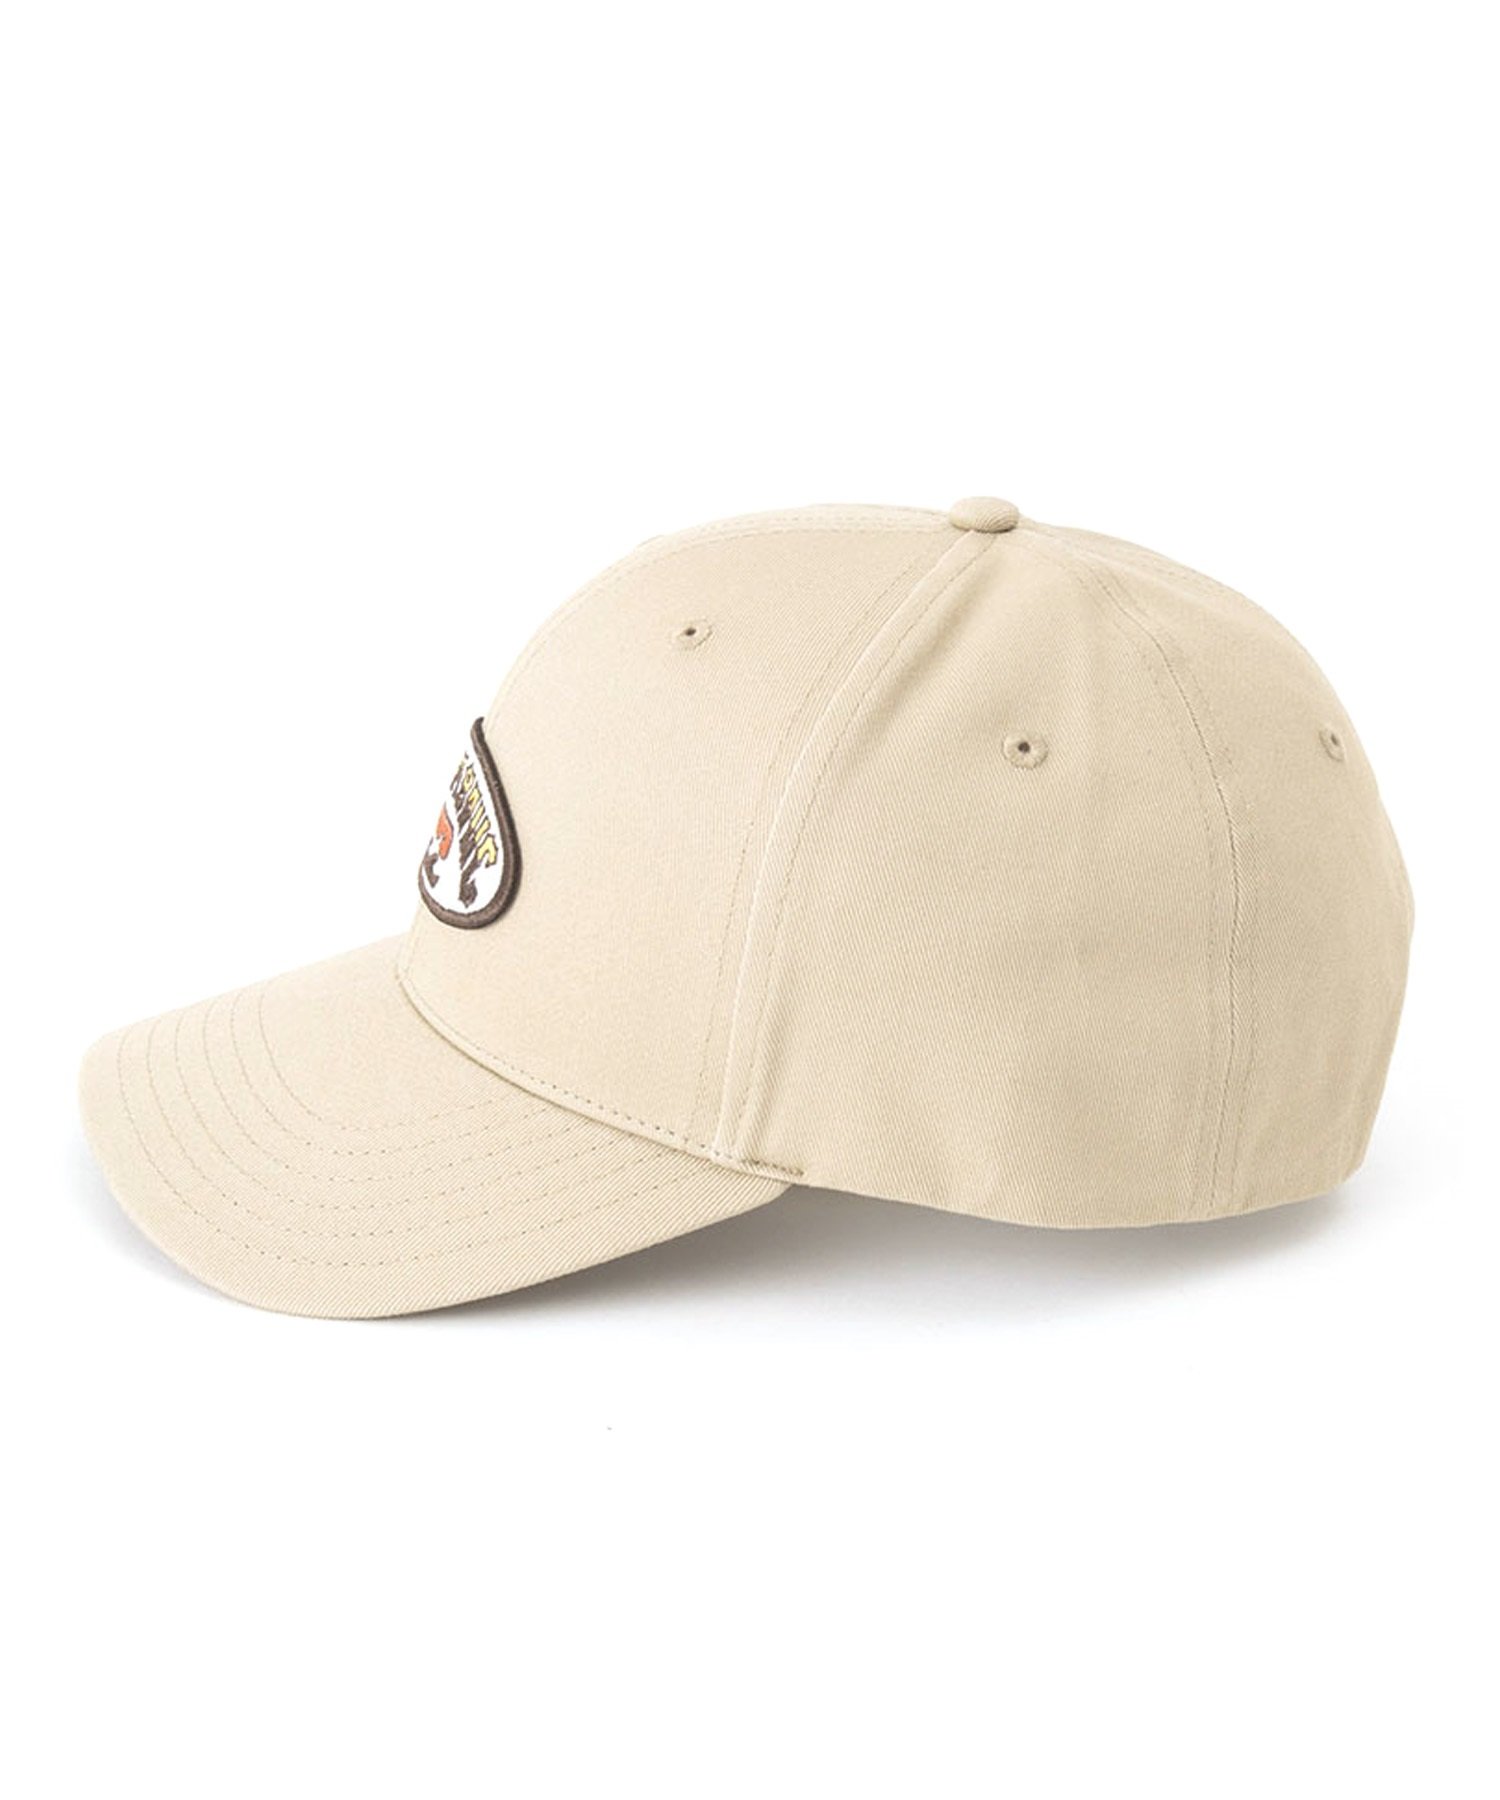 BILLABONG/ビラボン WALLED SNAPBACK キャップ 帽子 フリーサイズ BE011-917(TAU-FREE)